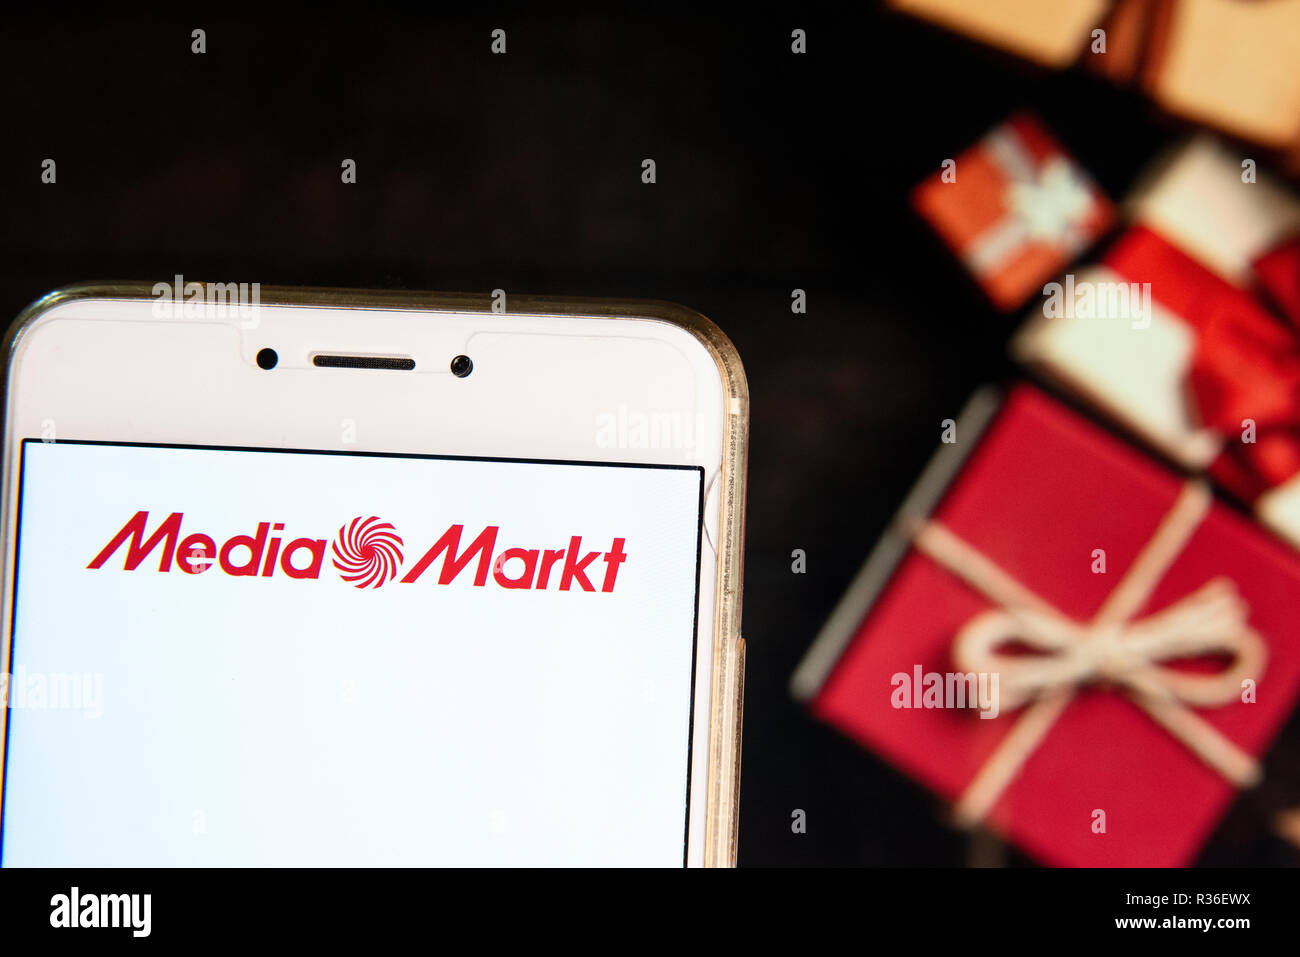 Electrónica alemana cadena multinacional de tiendas Media Markt logo es  visto en un dispositivo móvil Android con una Navidad regalos envueltos en  el fondo Fotografía de stock - Alamy